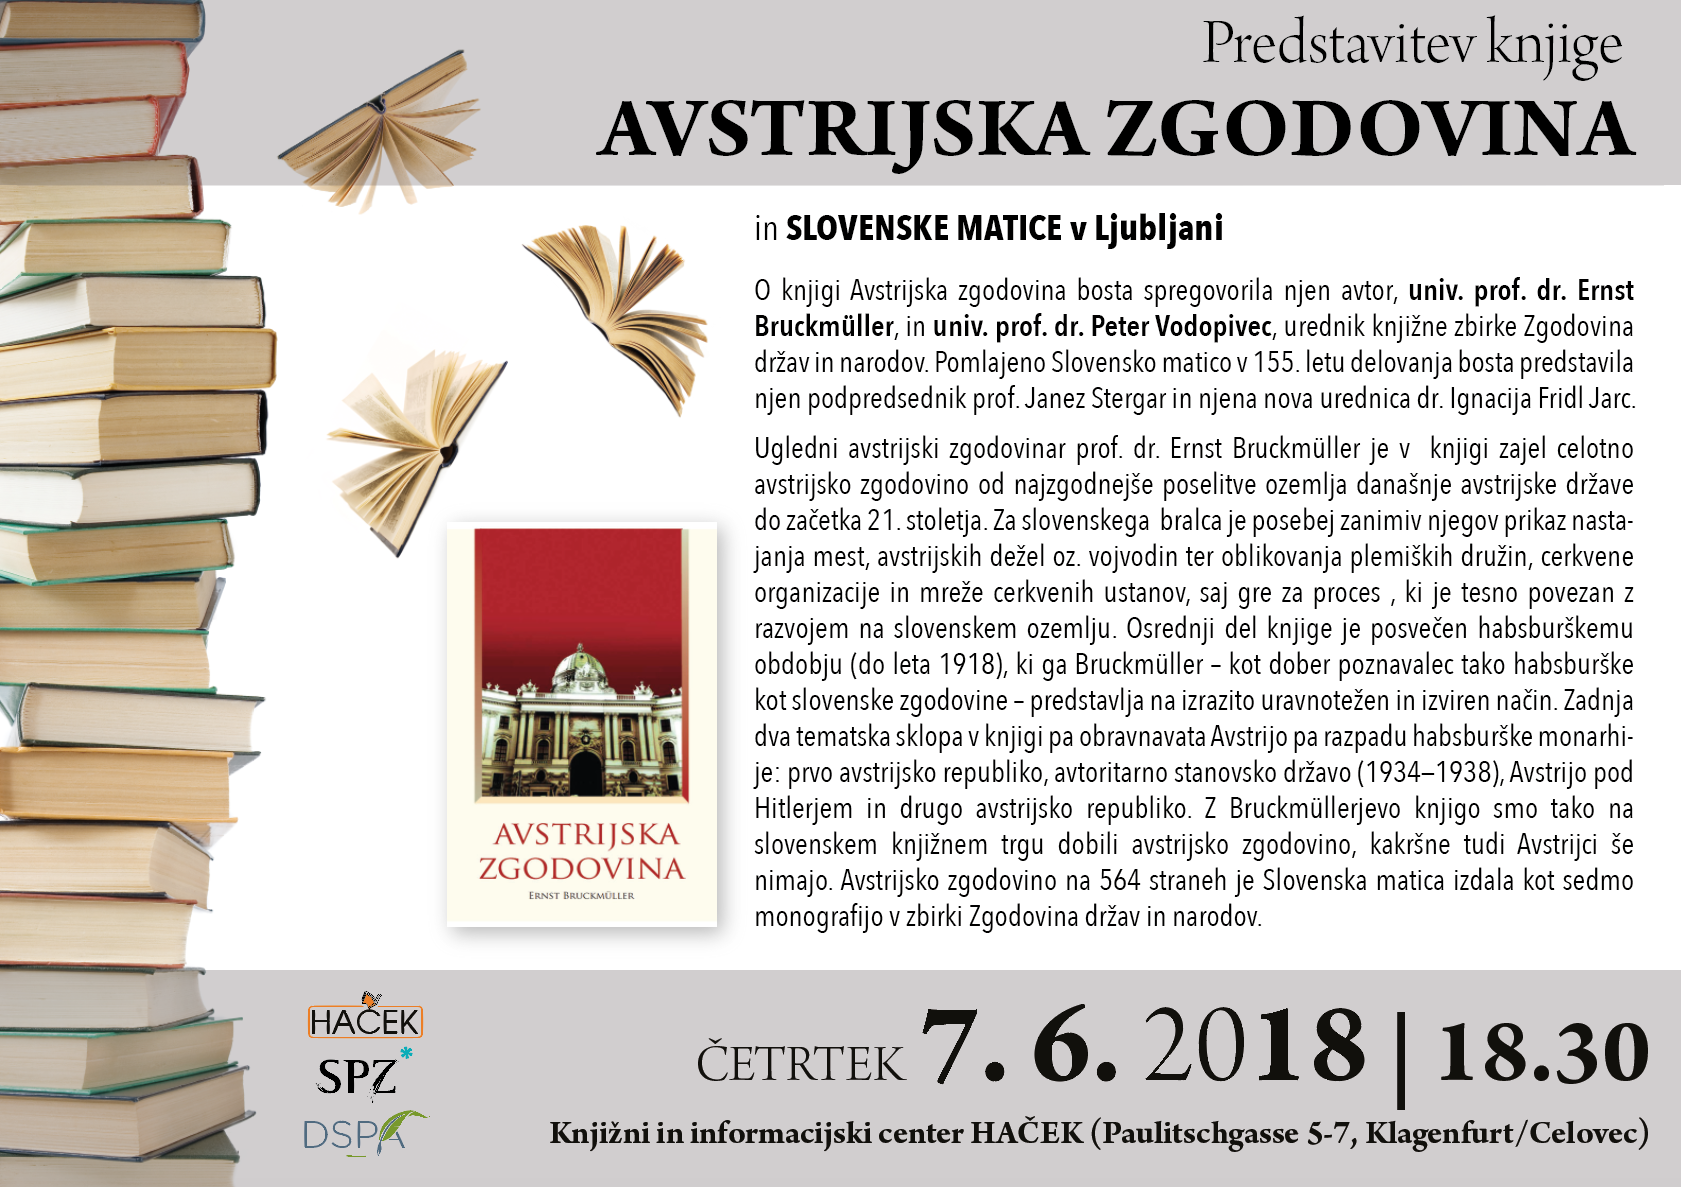 Predstavitev knjige Avstrijska zgodovina in Slovenske matice